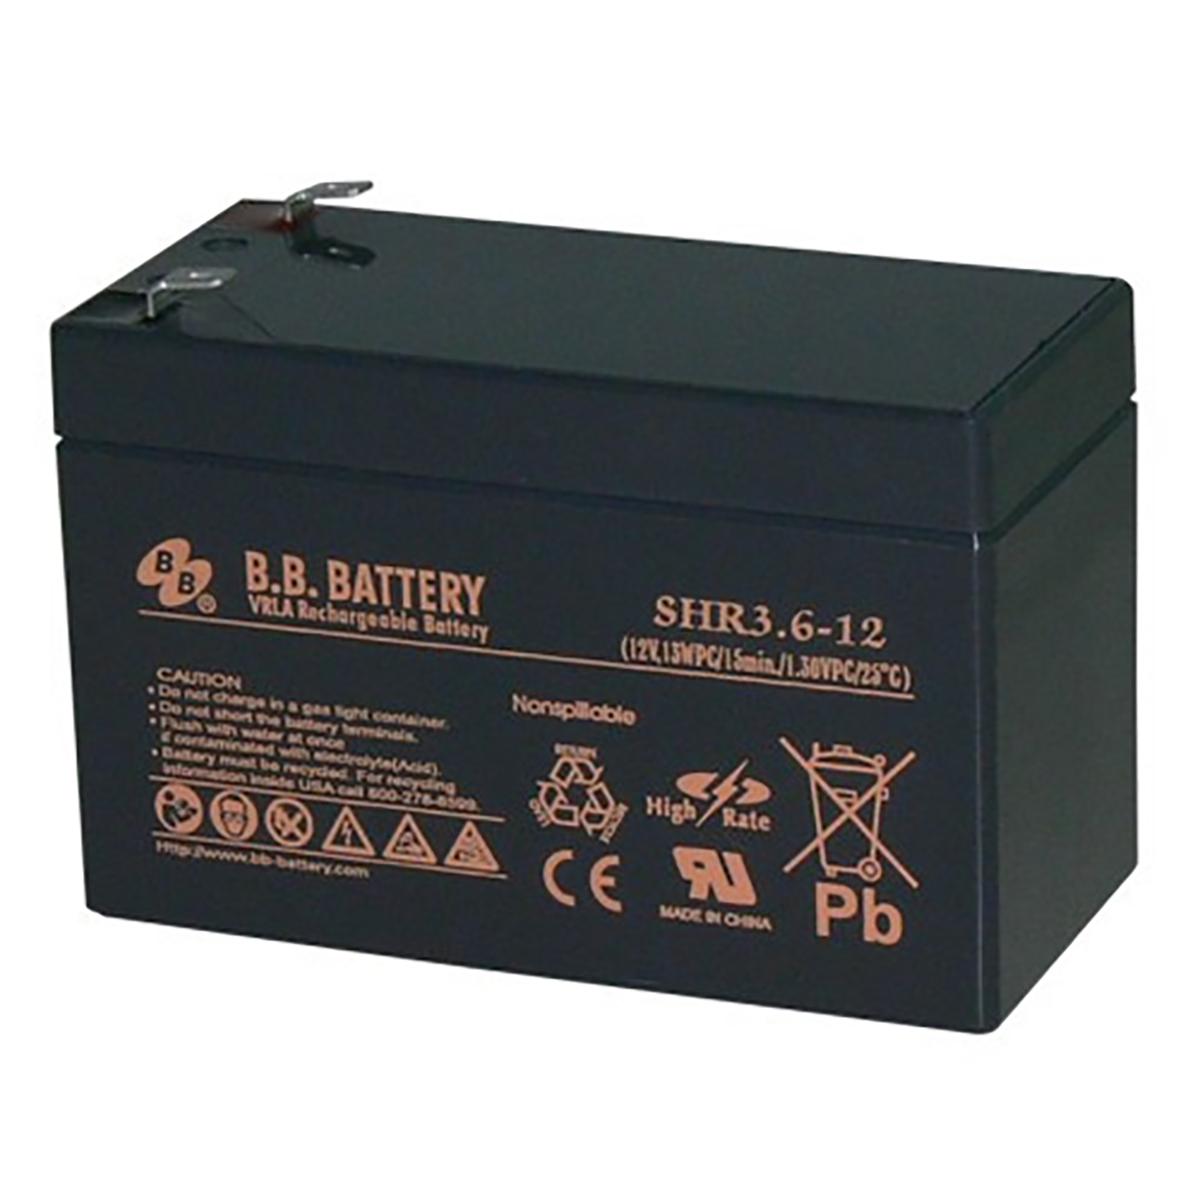 BB Battery SHR3.6-12 VRLA Rechargeable Battery 12v 13WPC